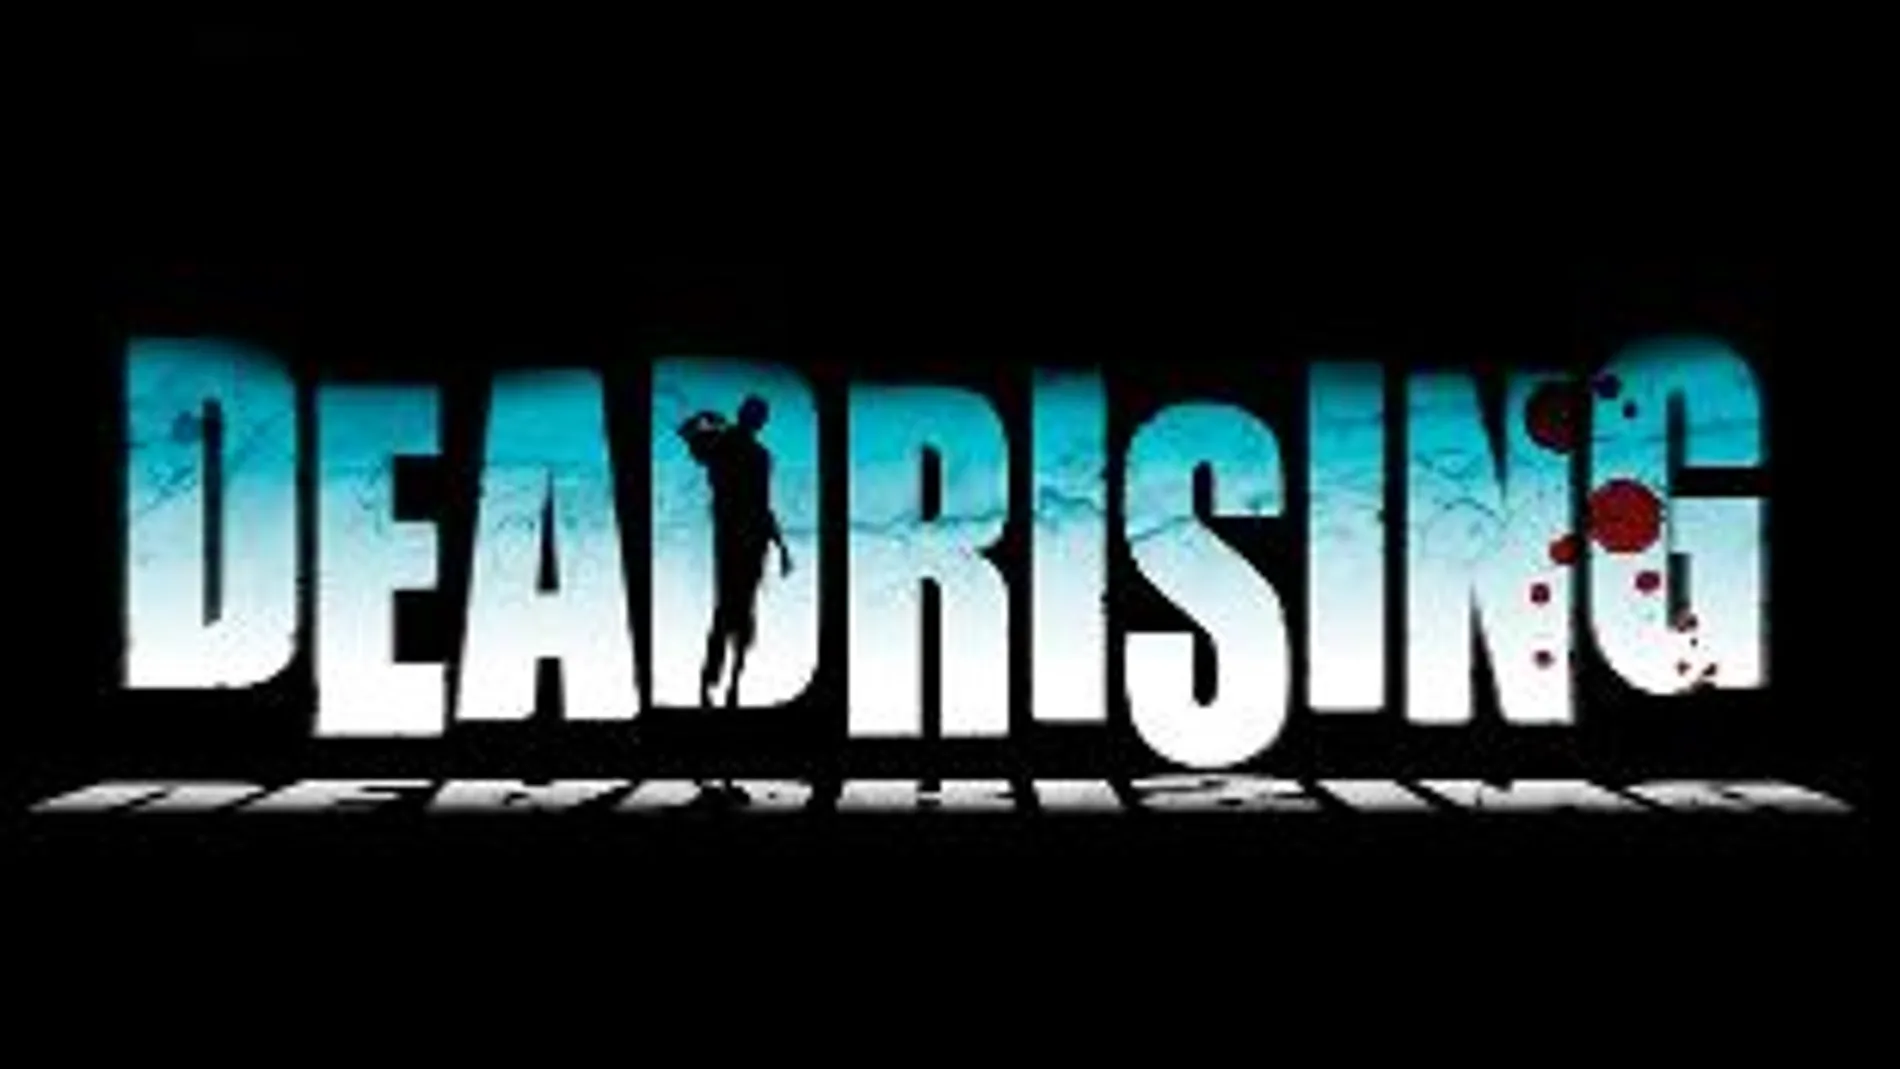 Dead Rising y sus secuelas debutarán en Play Station 4, PC y Xbox One